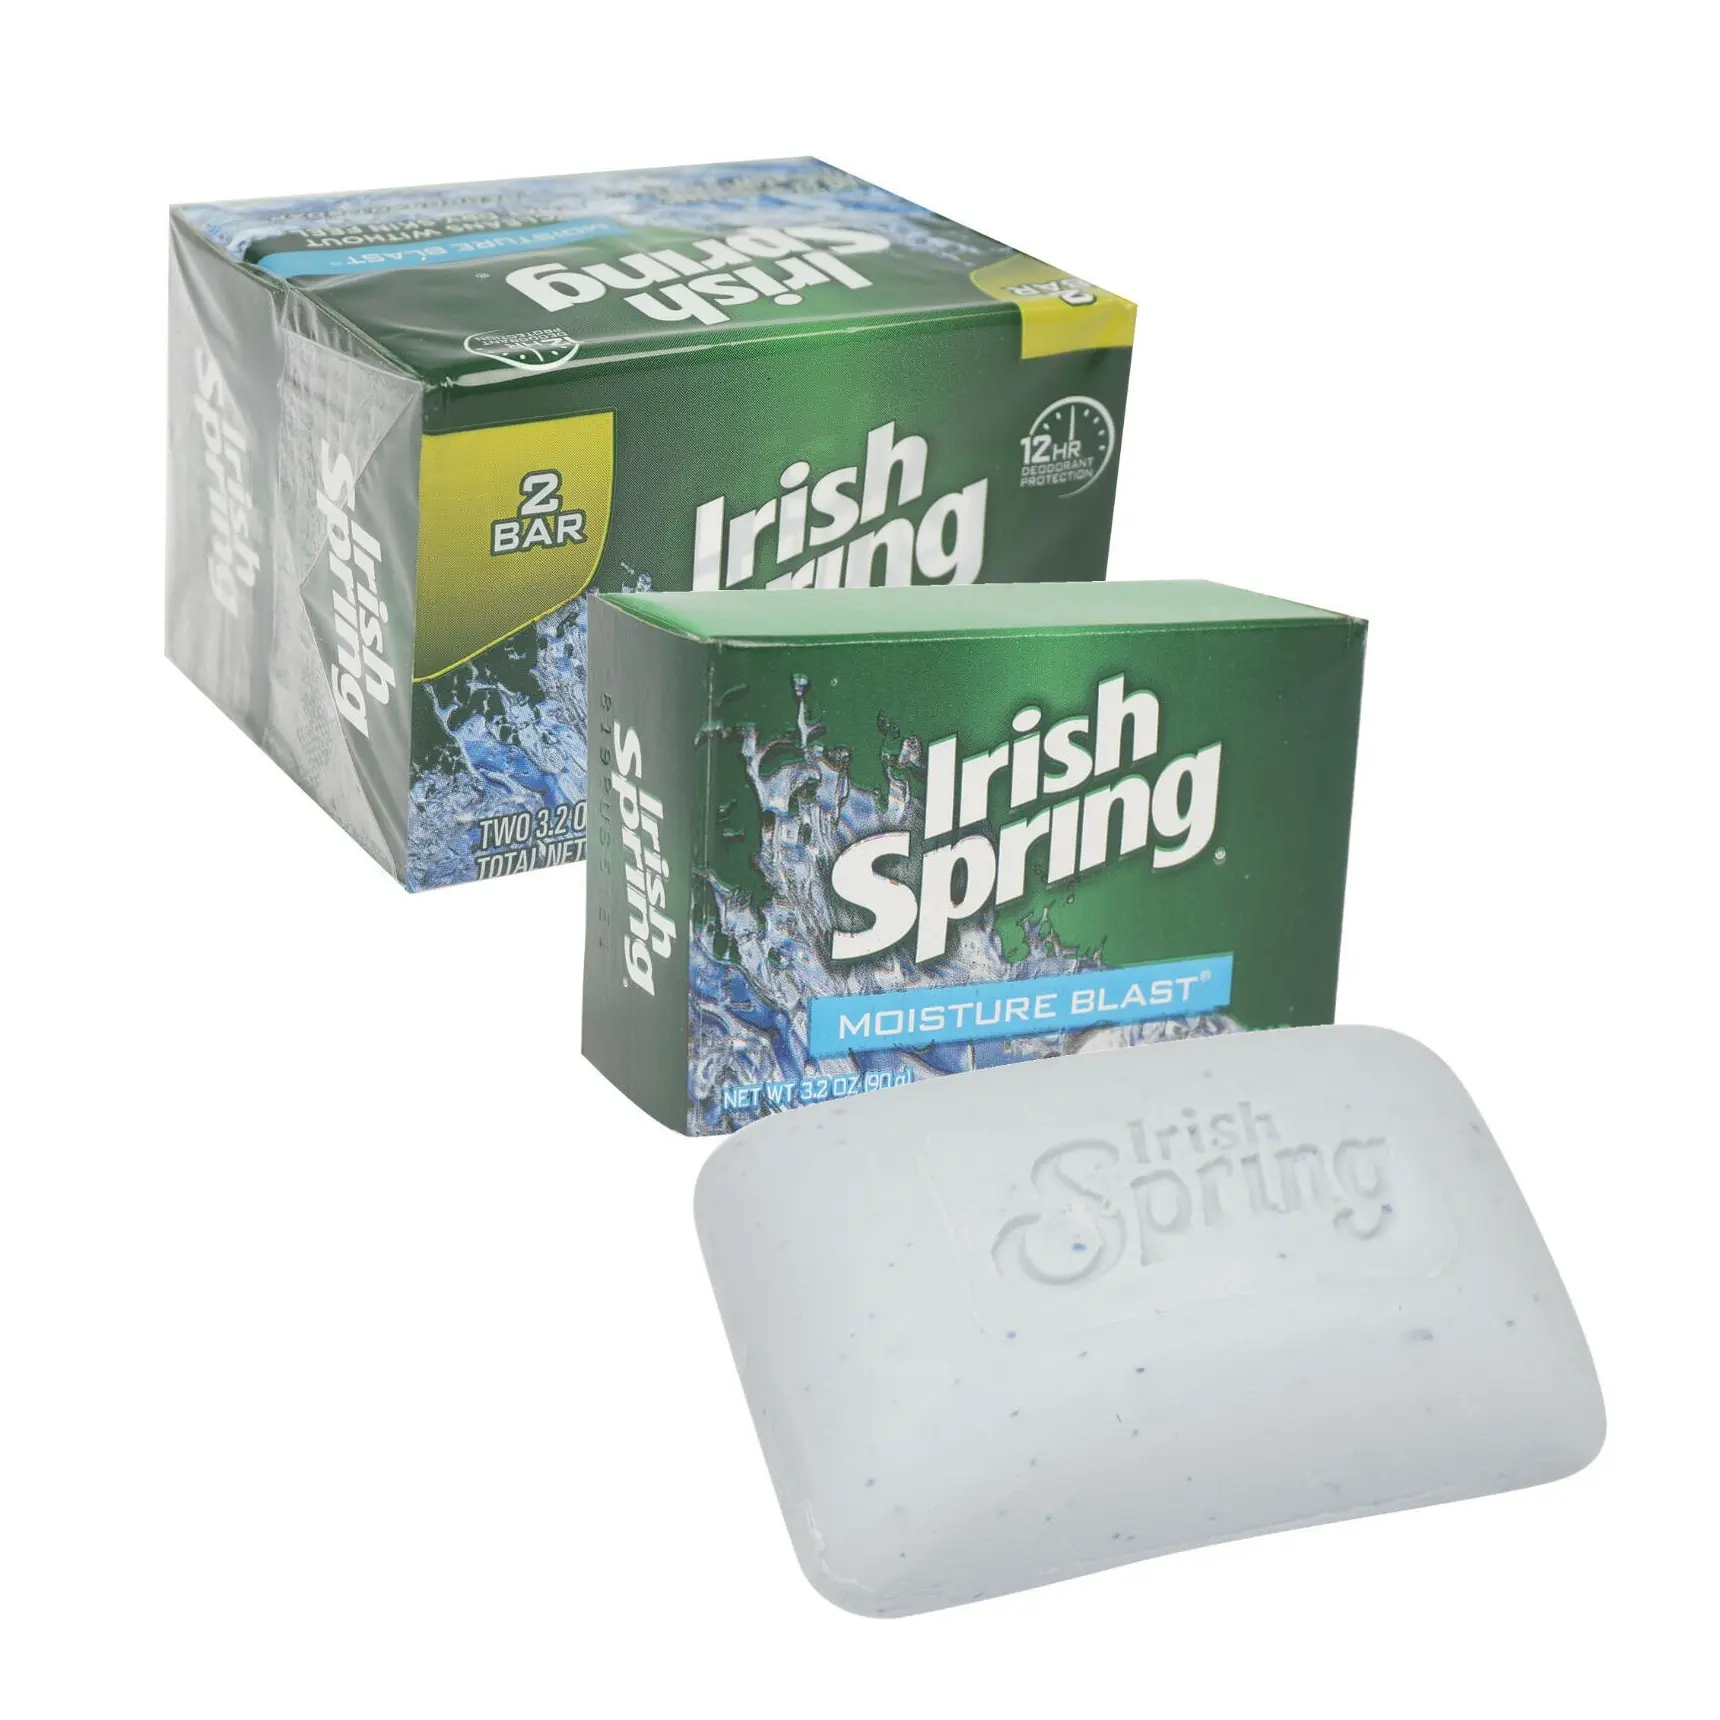 Compre jabón en barra desodorante de primavera irlandesa a precio barato de distribuidores de jabón irlandés al por mayor